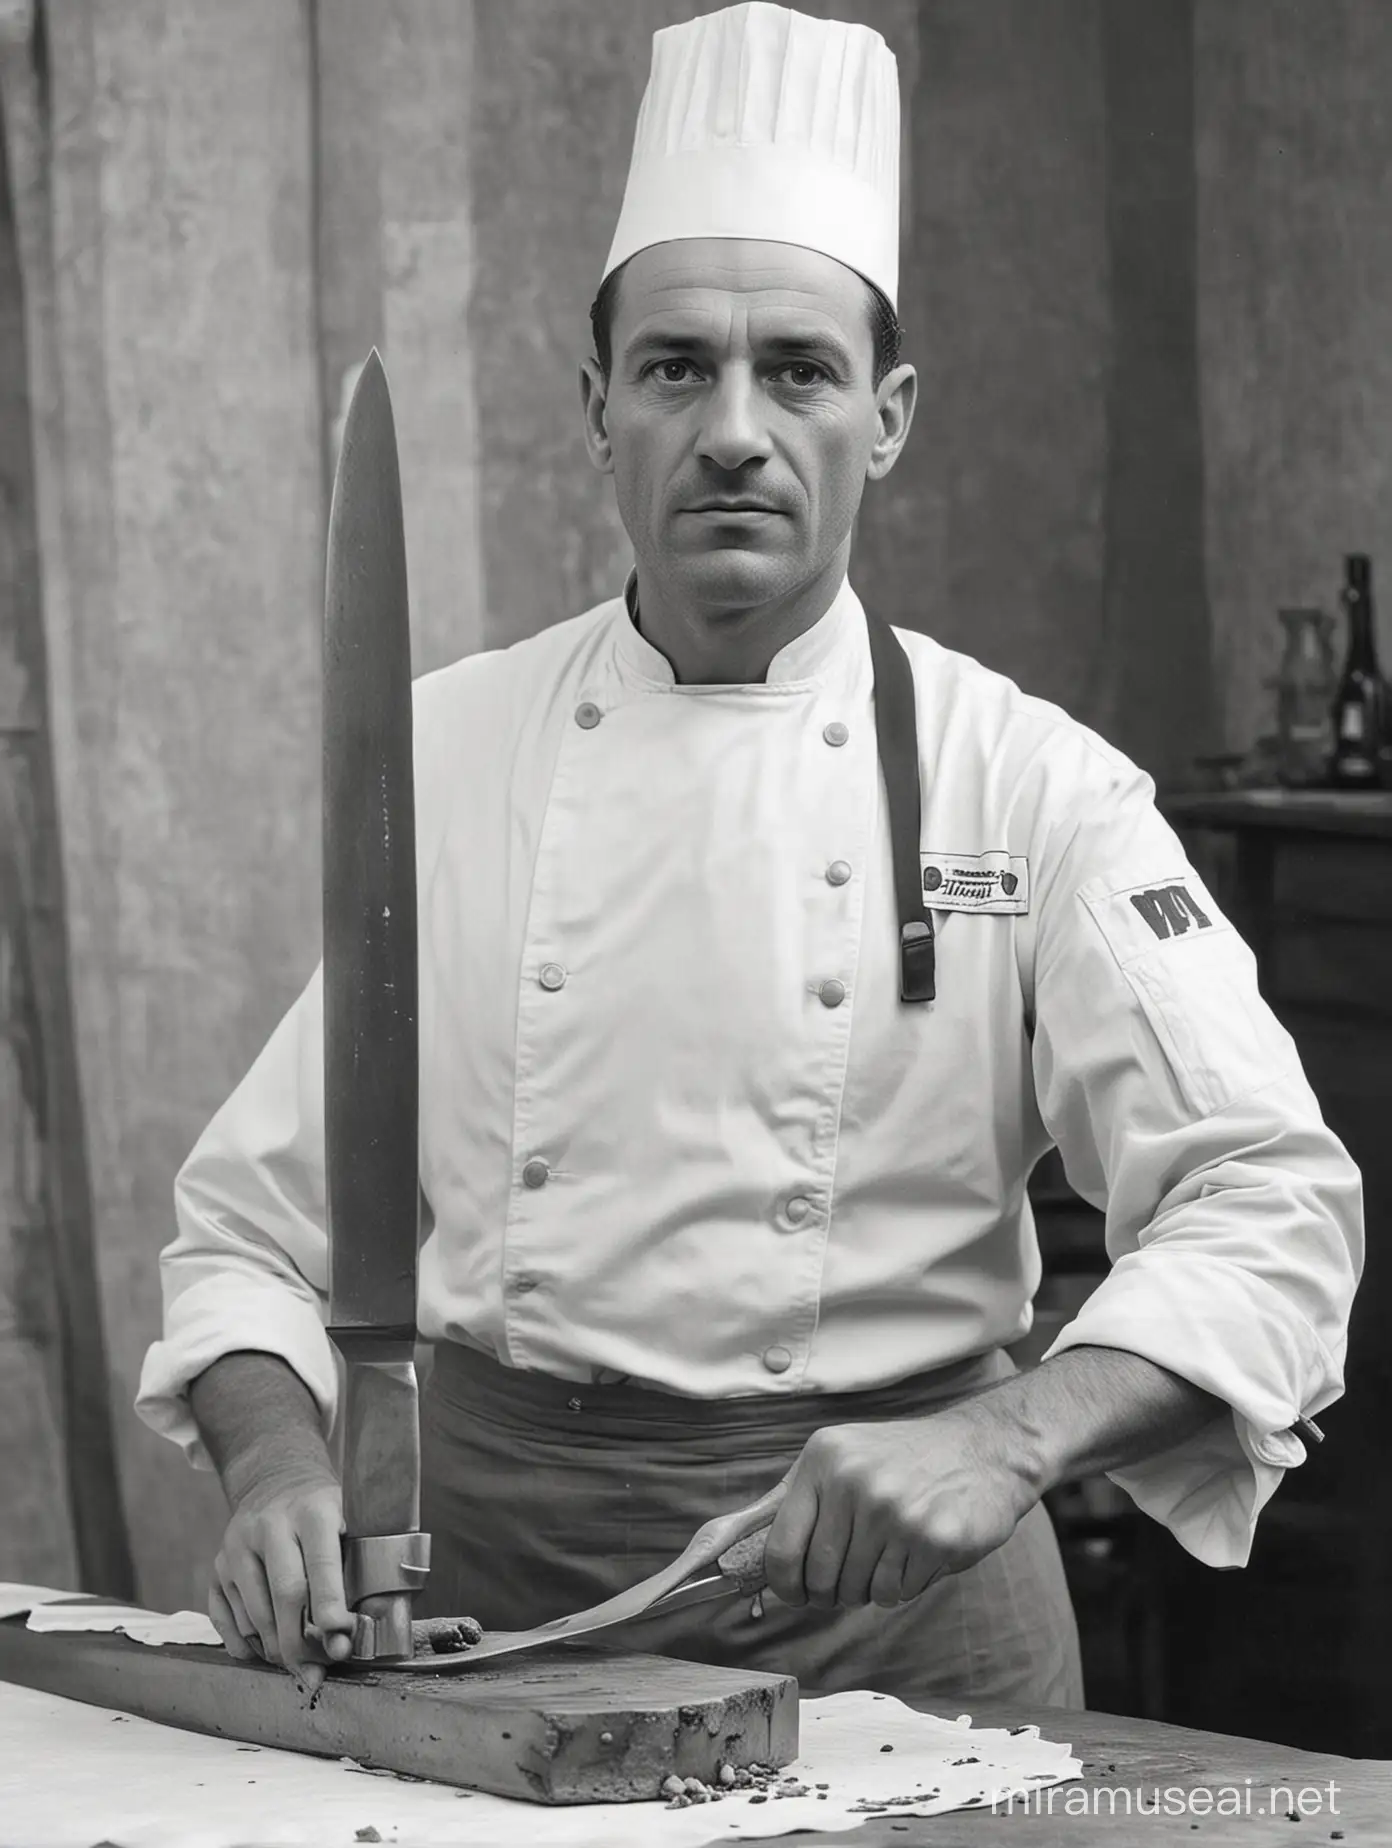 WW2 Era French Chef Wielding a Grand Knife